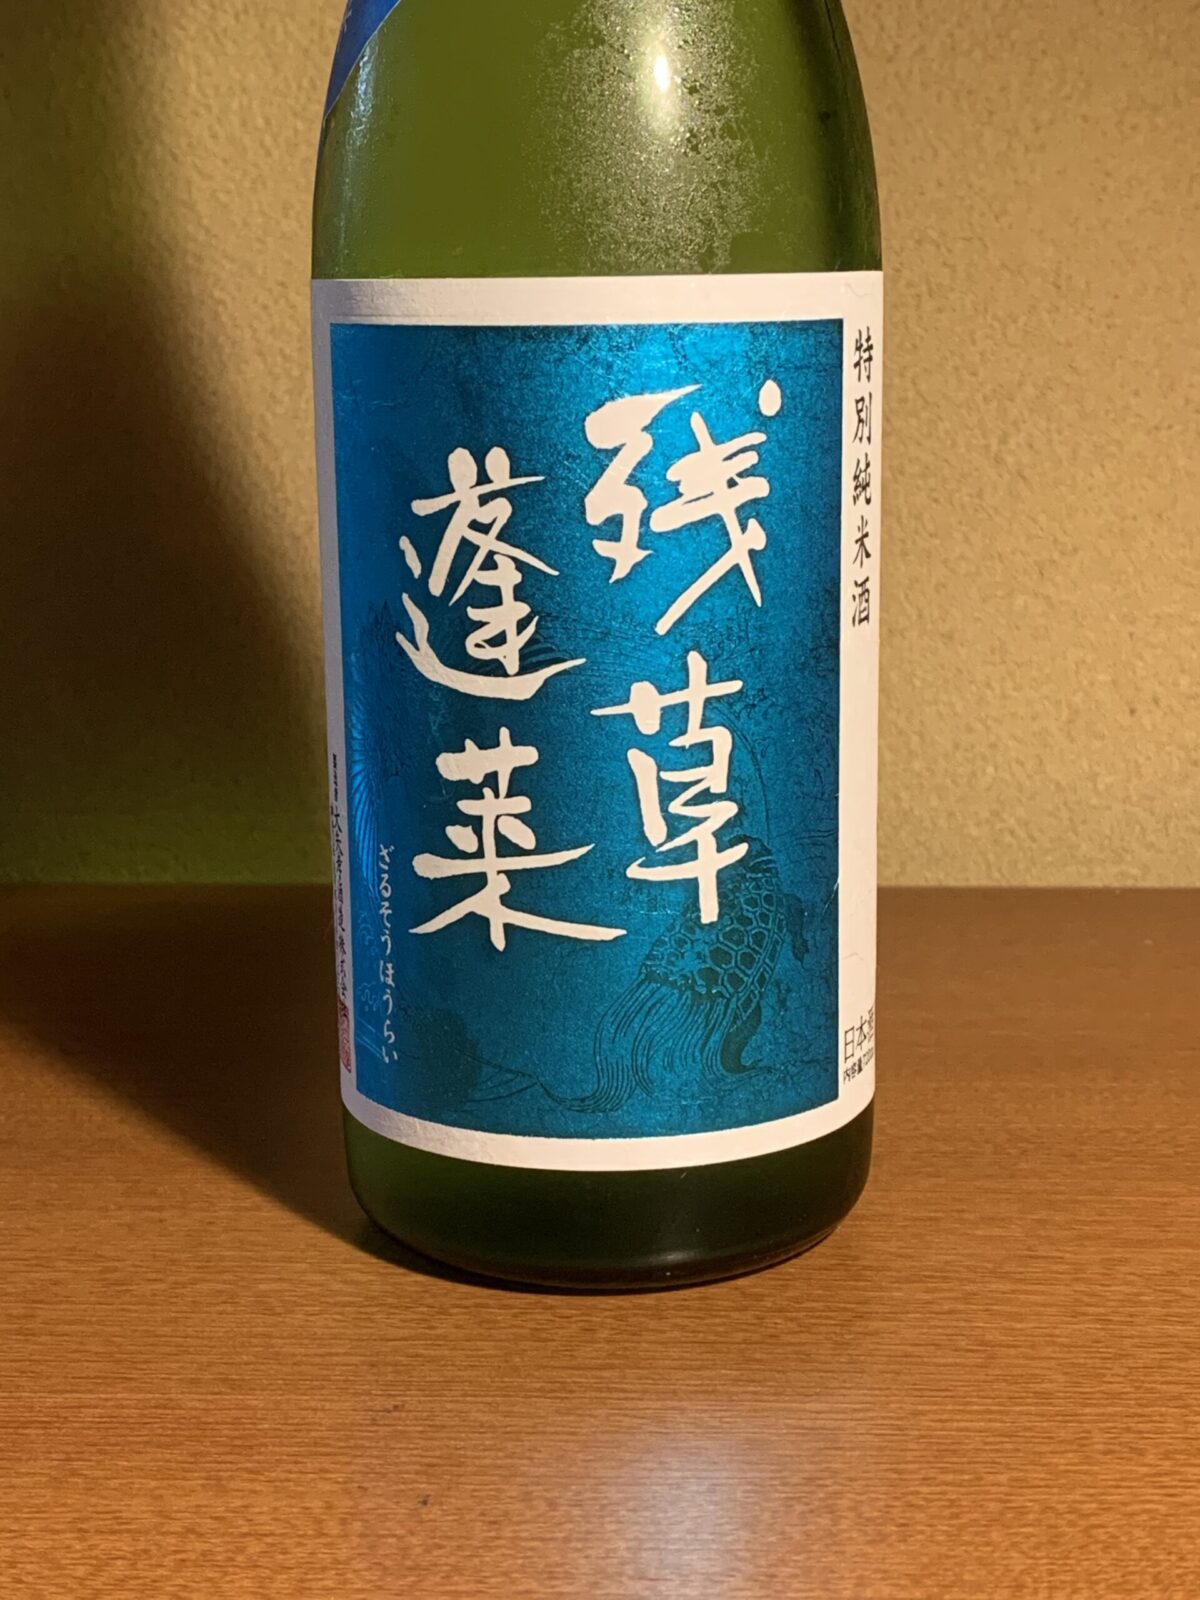 神奈川の日本酒『残草蓬莱 四六式』は白麹仕込みの甘酸っぱい味わい